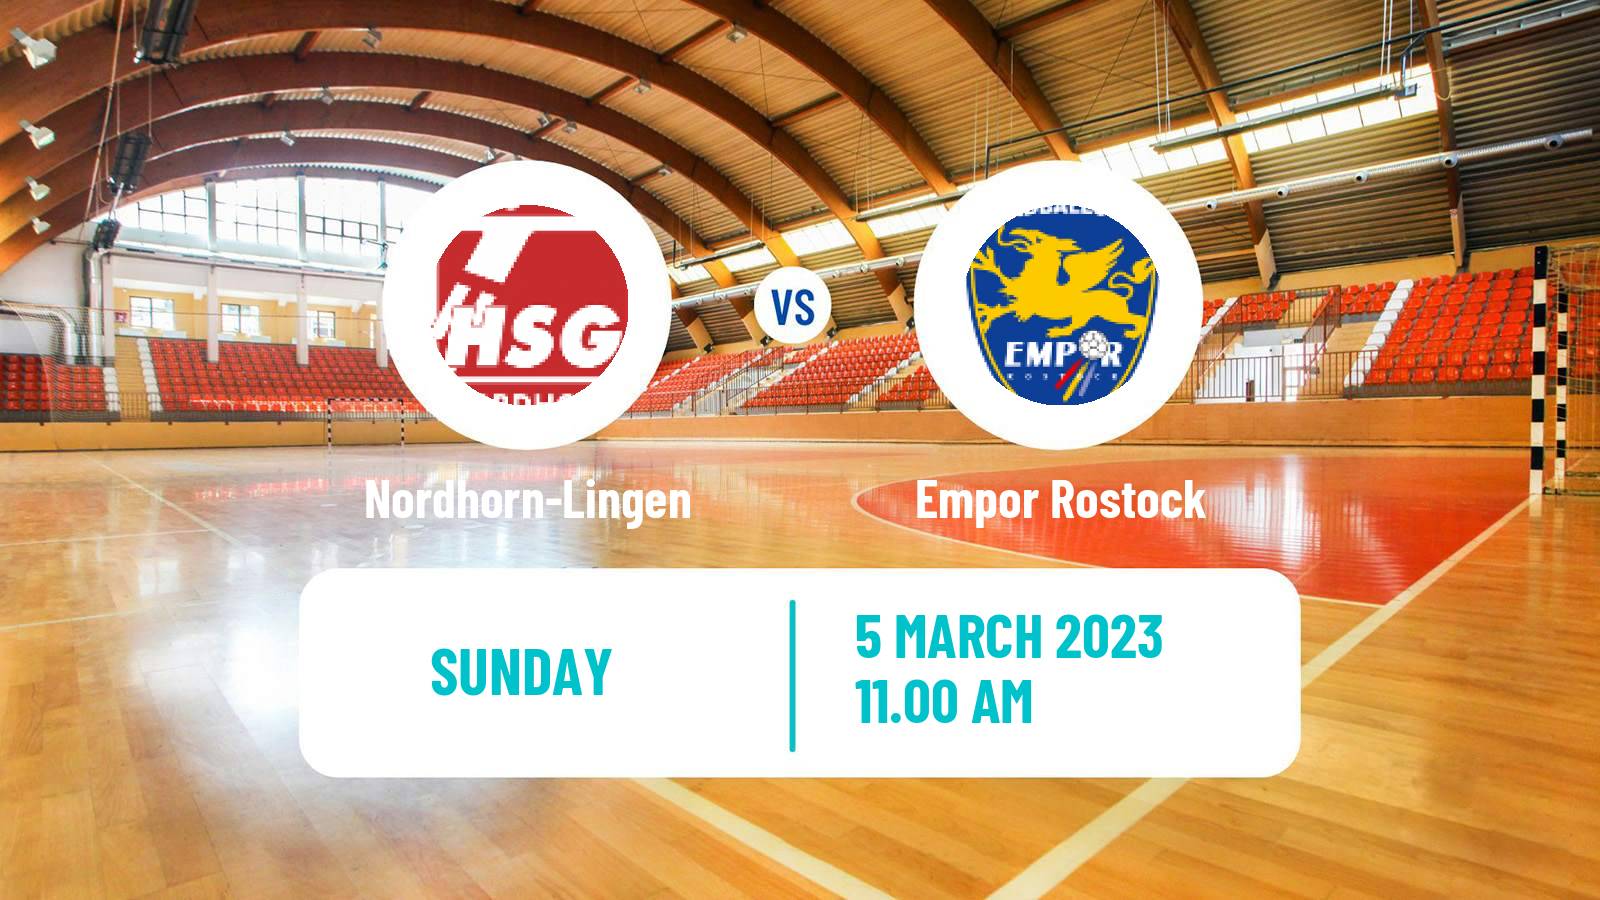 Handball German 2 Bundesliga Handball Nordhorn-Lingen - Empor Rostock